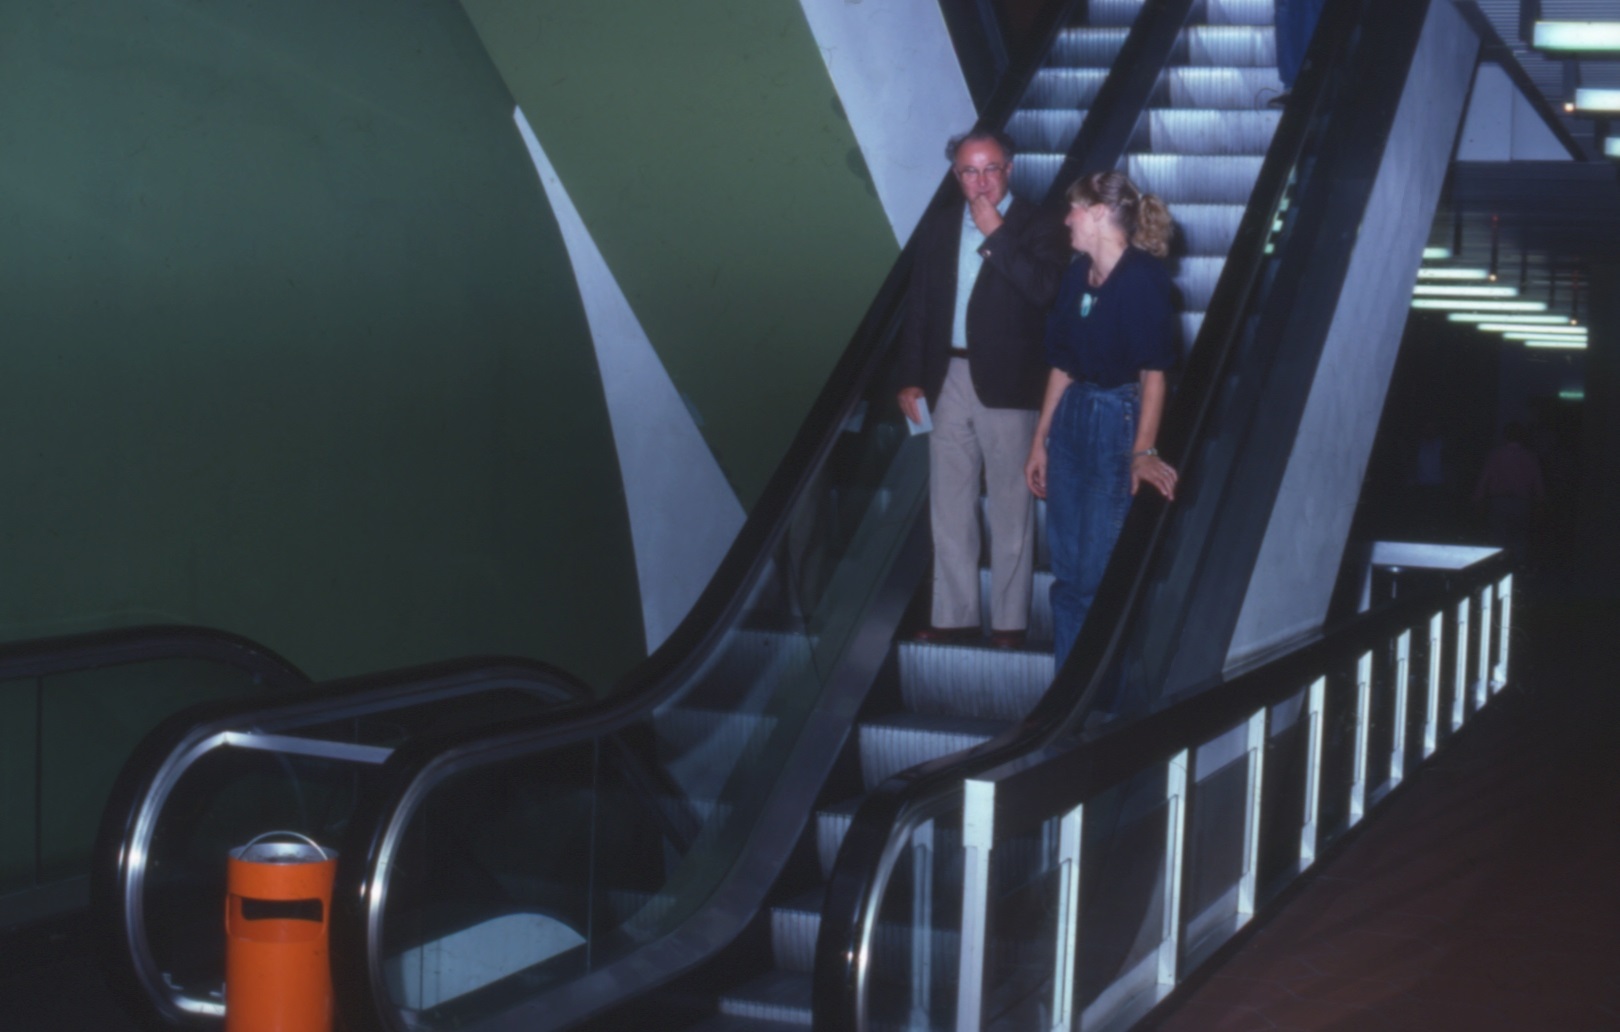 Zweibahnige gegenläufige Rolltreppen im Haupttreppenhaus ermöglichten eine zügige Erschließung der Ebenen 10 bis 60 (Bild: Deutsche Rentenversicherung Baden-Württemberg, W. Trepl, um 1980)